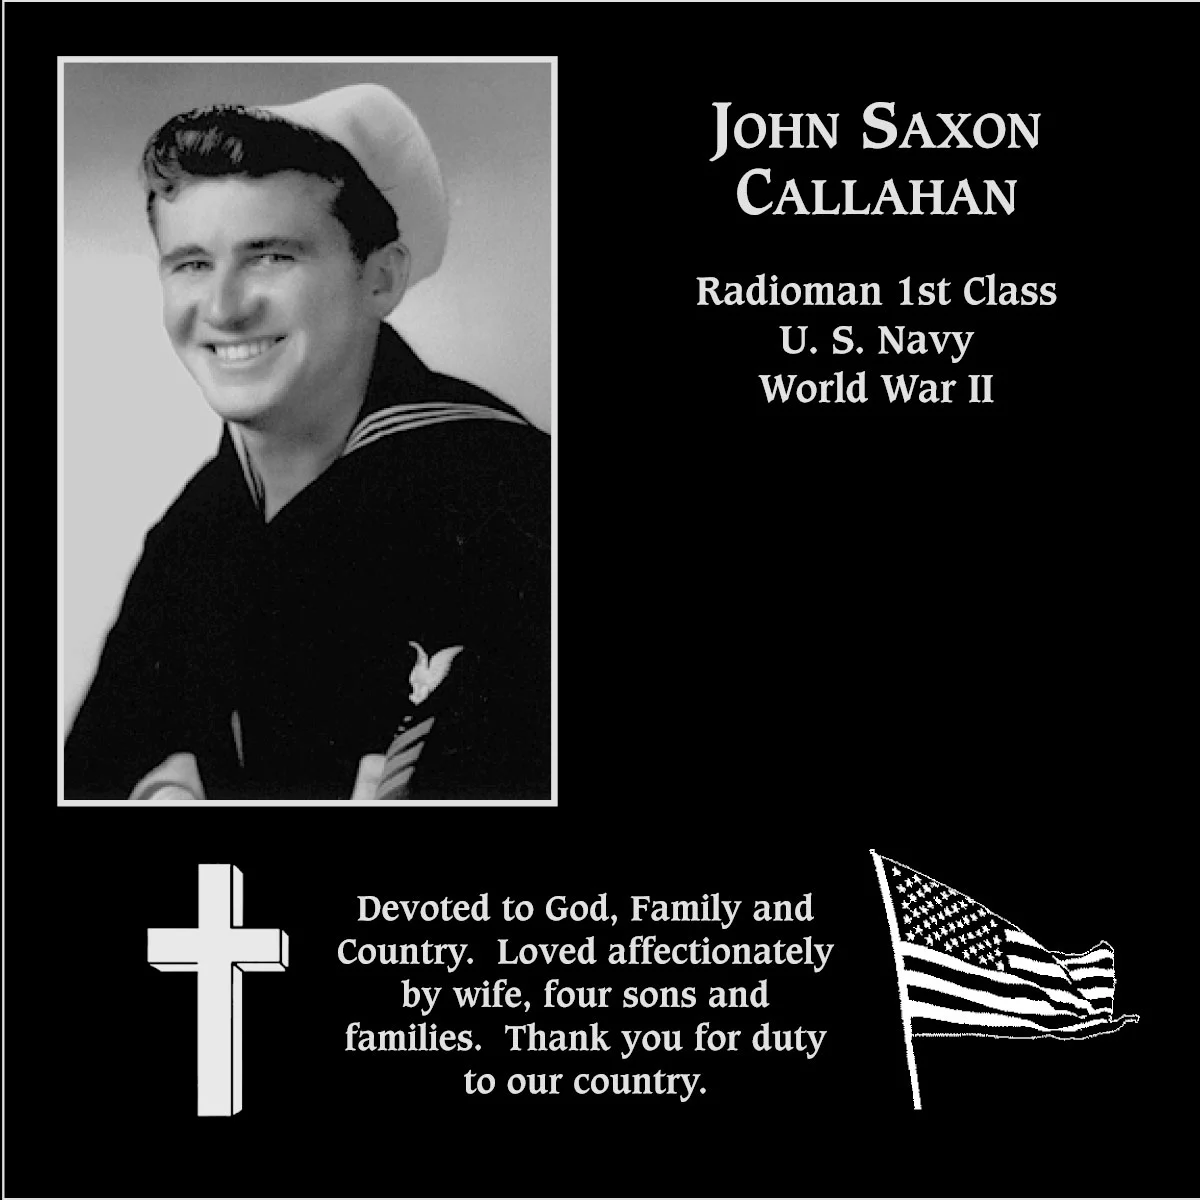 John Saxon Callahan